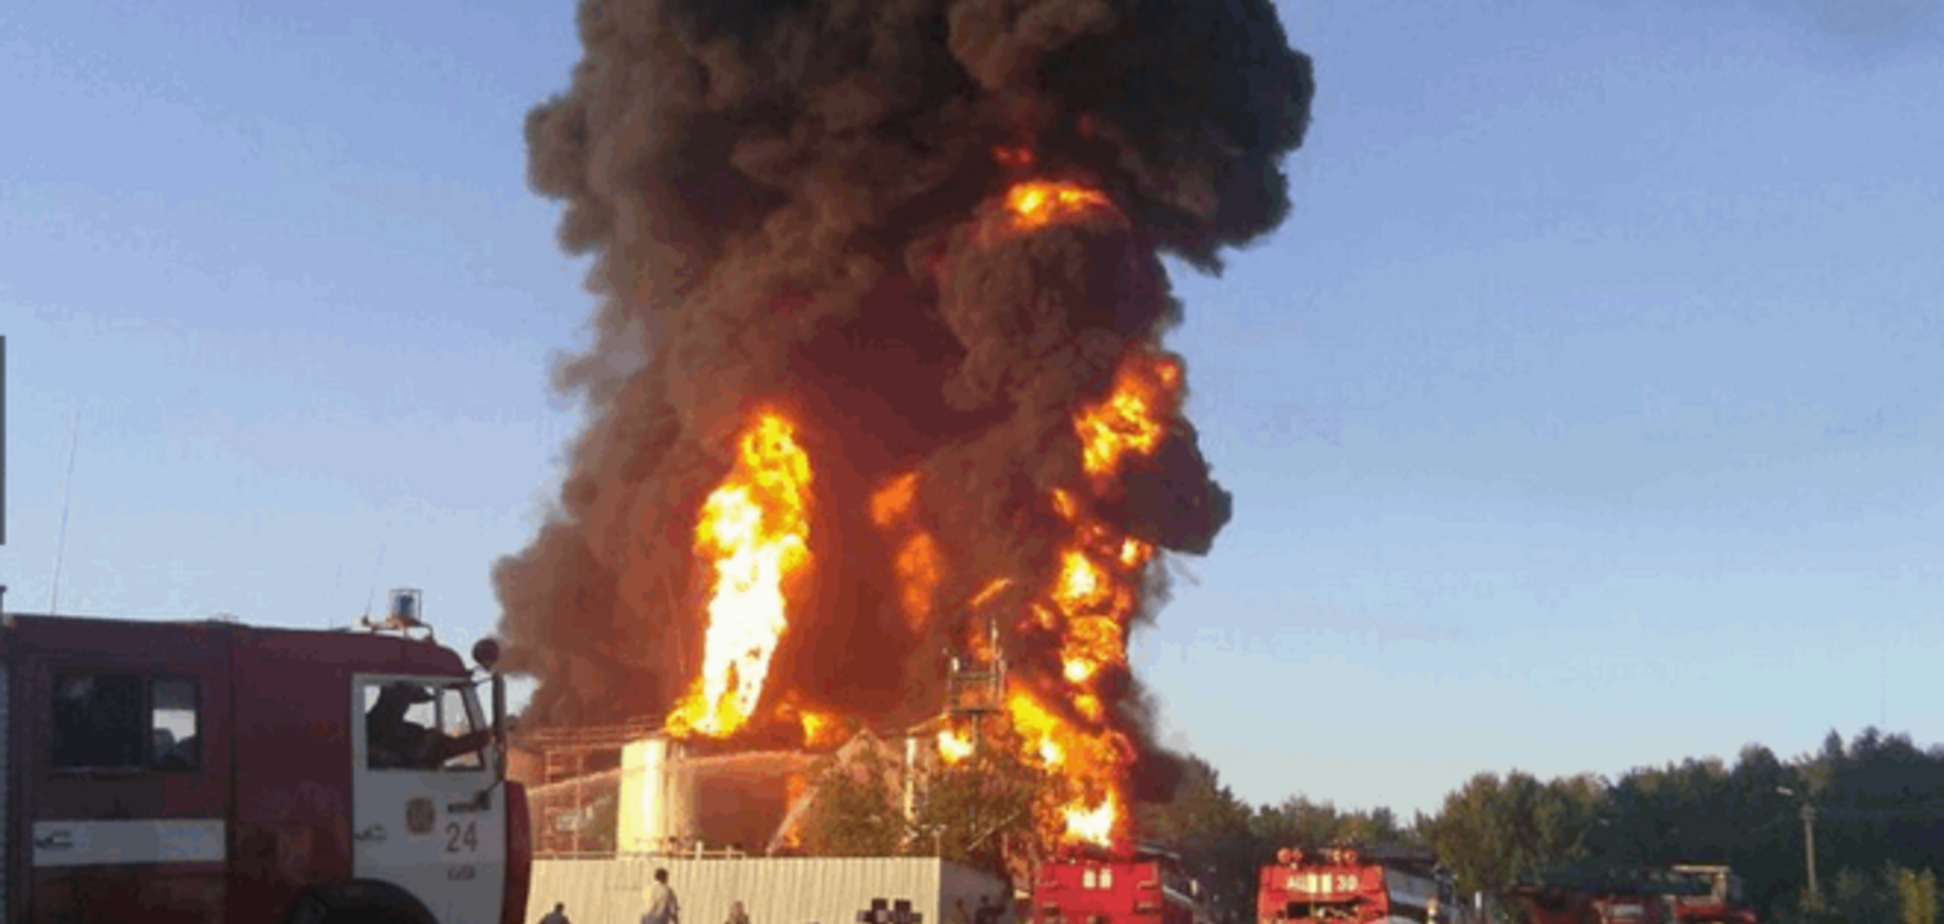 'БРСМ-Нафта' заявила про рейдерське захоплення нафтобази в Переяславі-Хмельницькому